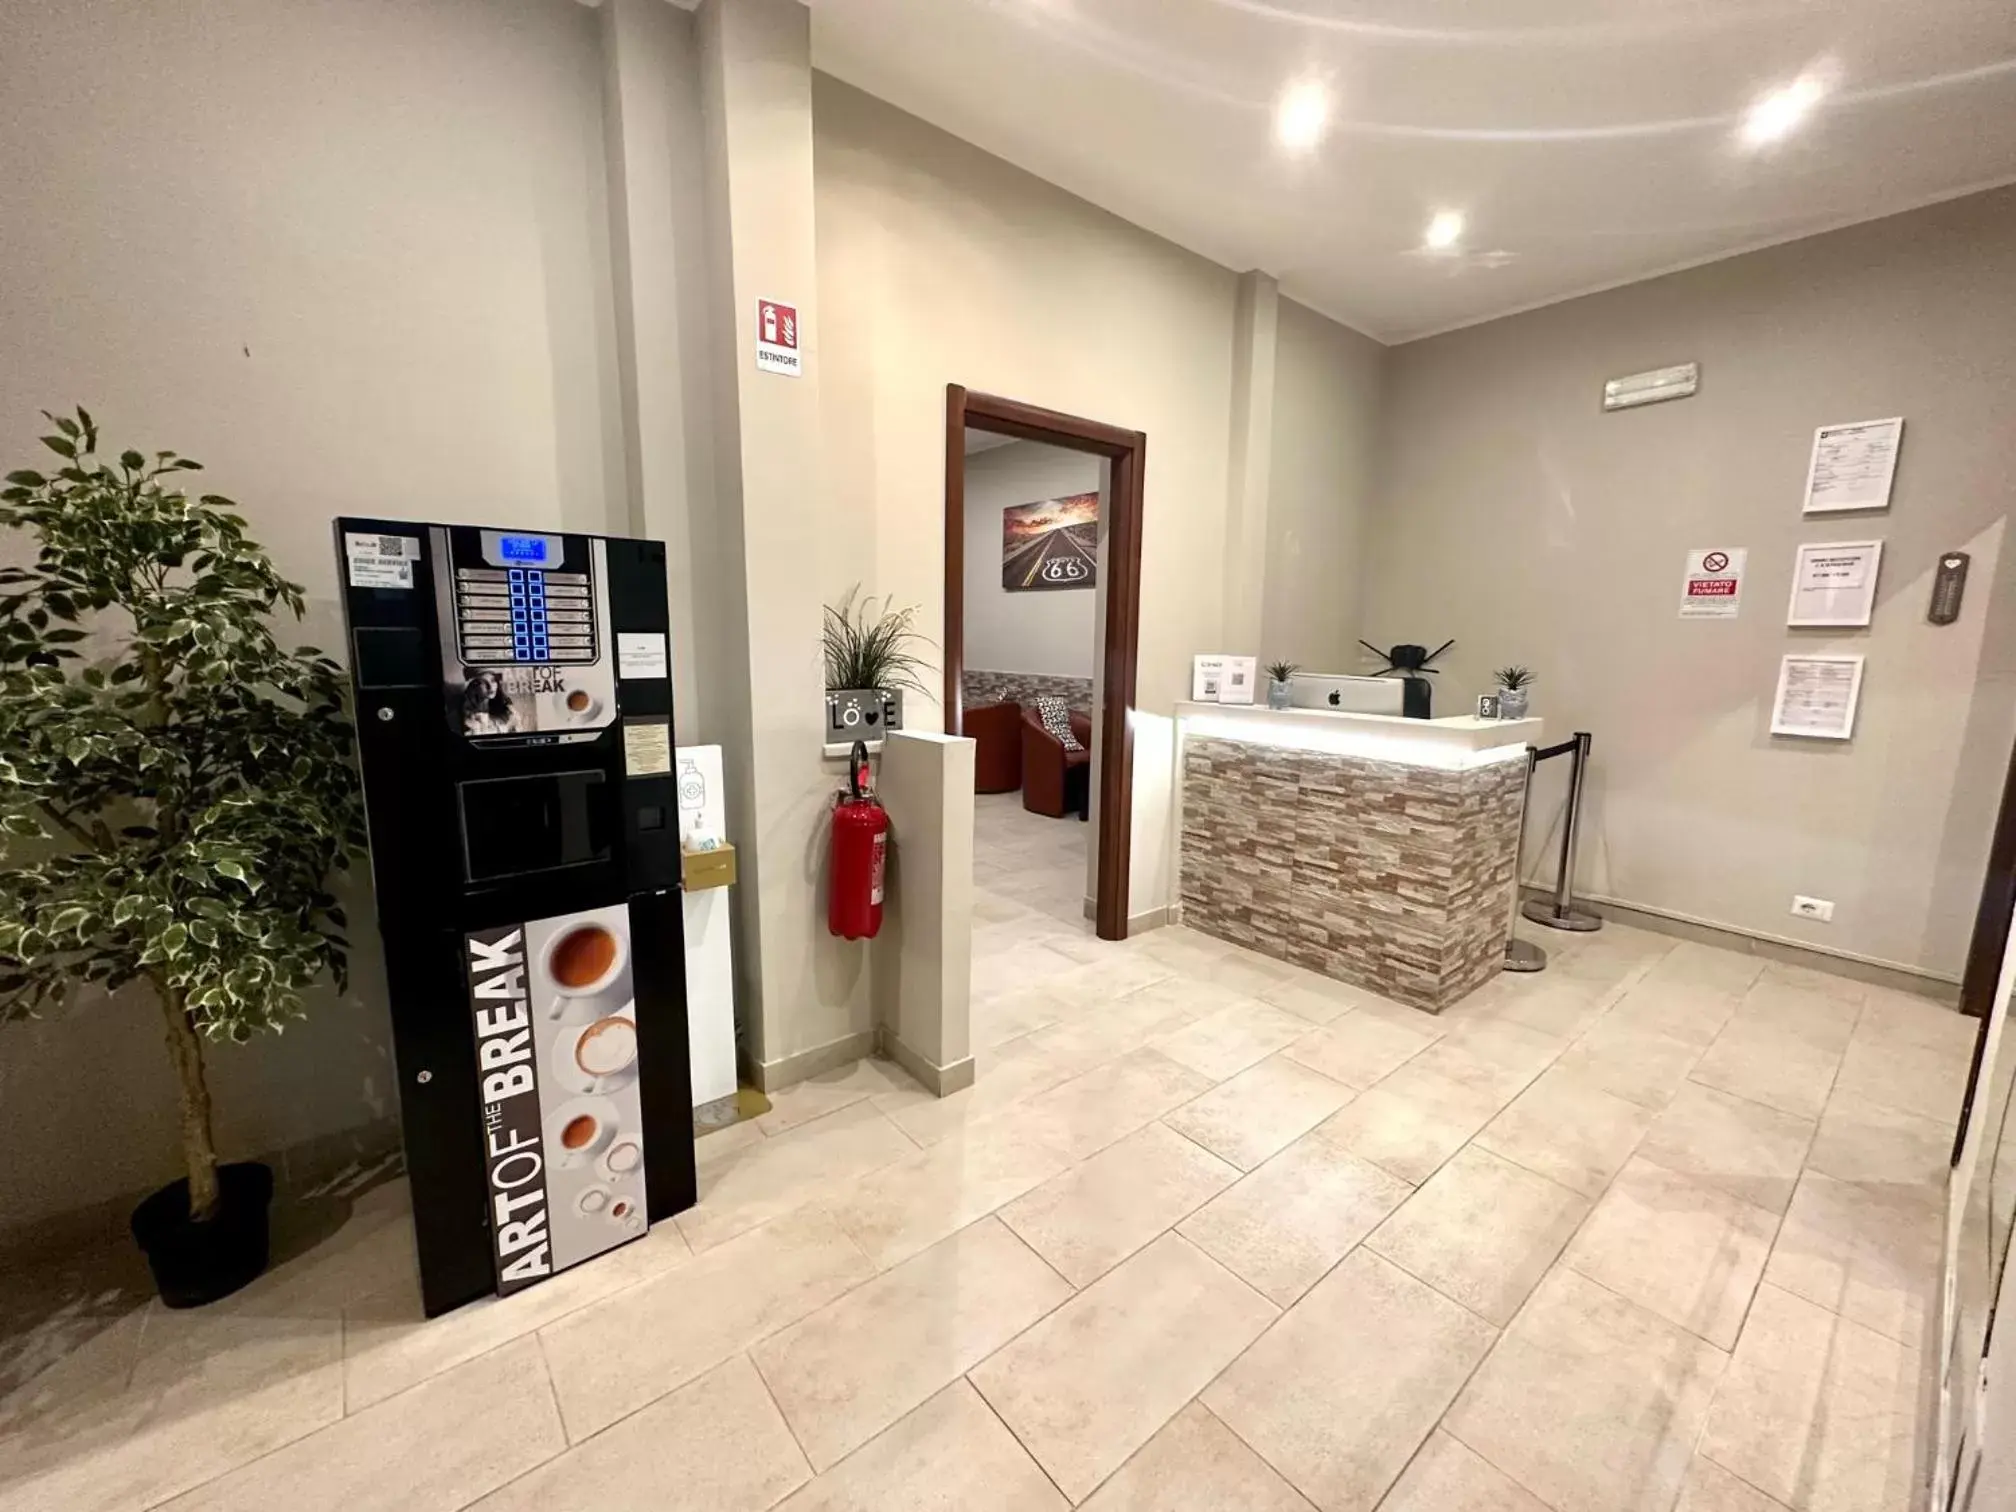 Lobby or reception, Lobby/Reception in Carlo Goldoni Hotel